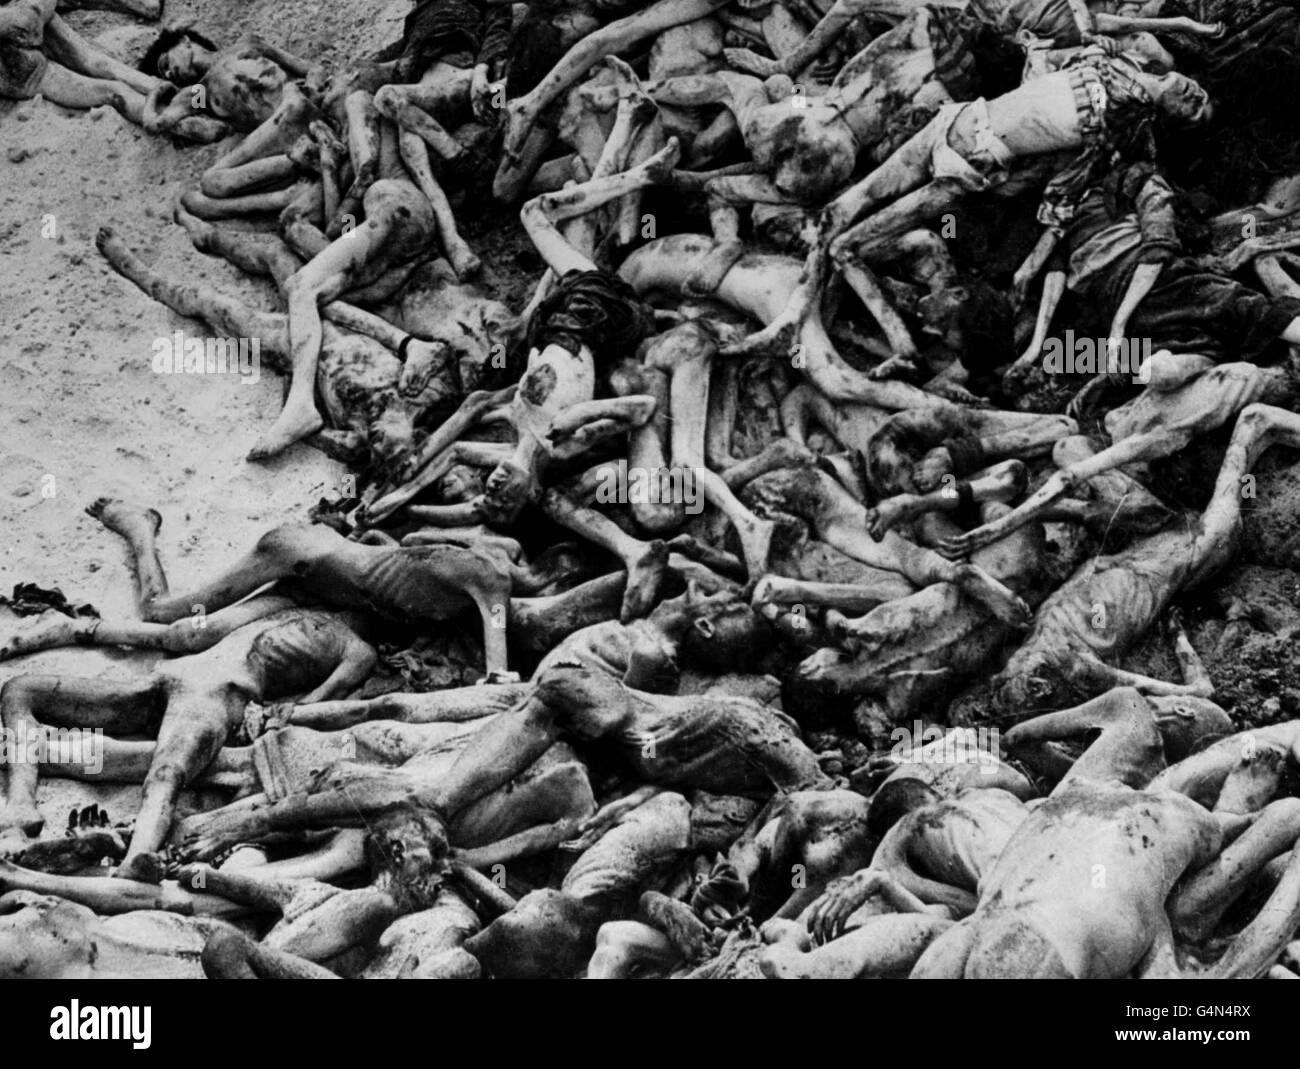 DER HOLOCAUST: Von alliierten Truppen entdeckte Leichen, die gegen Ende des Zweiten Weltkriegs in einem Massengrab im Konzentrationslager Belsen in der Nähe von Hamburg lagen. Bergen-Belsen wurde am 15. April 1945 von britischen Truppen befreit. Stockfoto